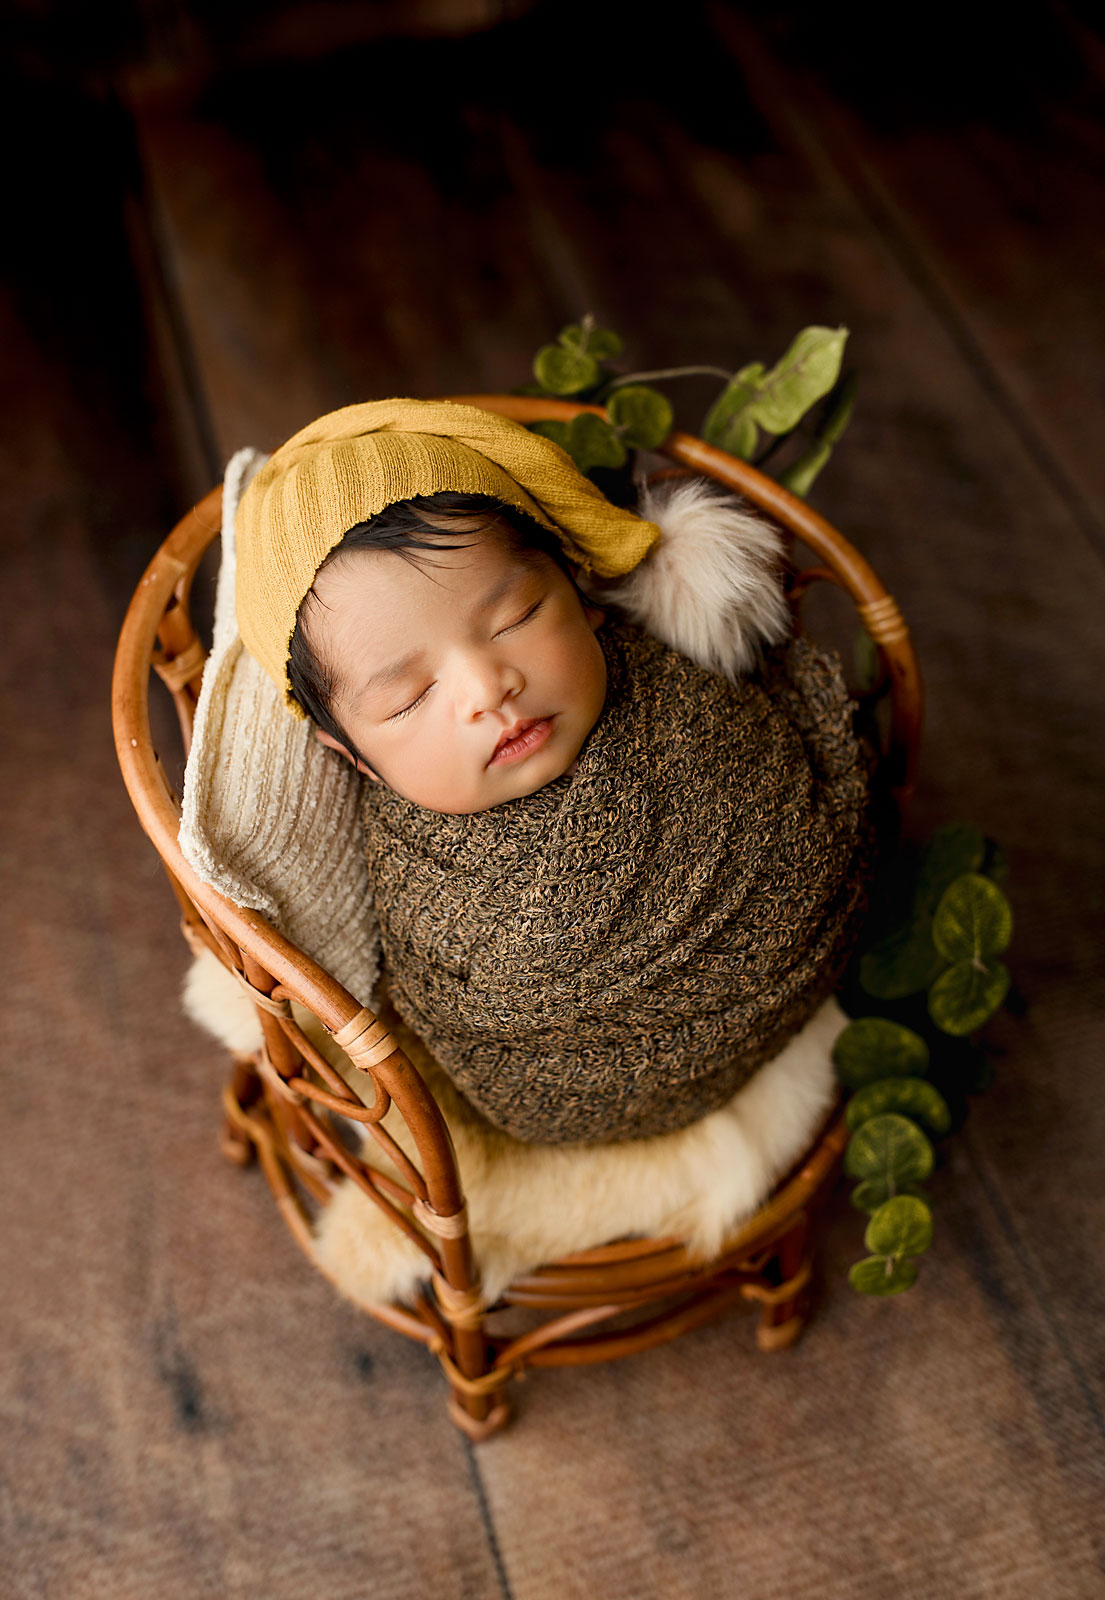 baby boy sleeping ia basket with orange bonnet 